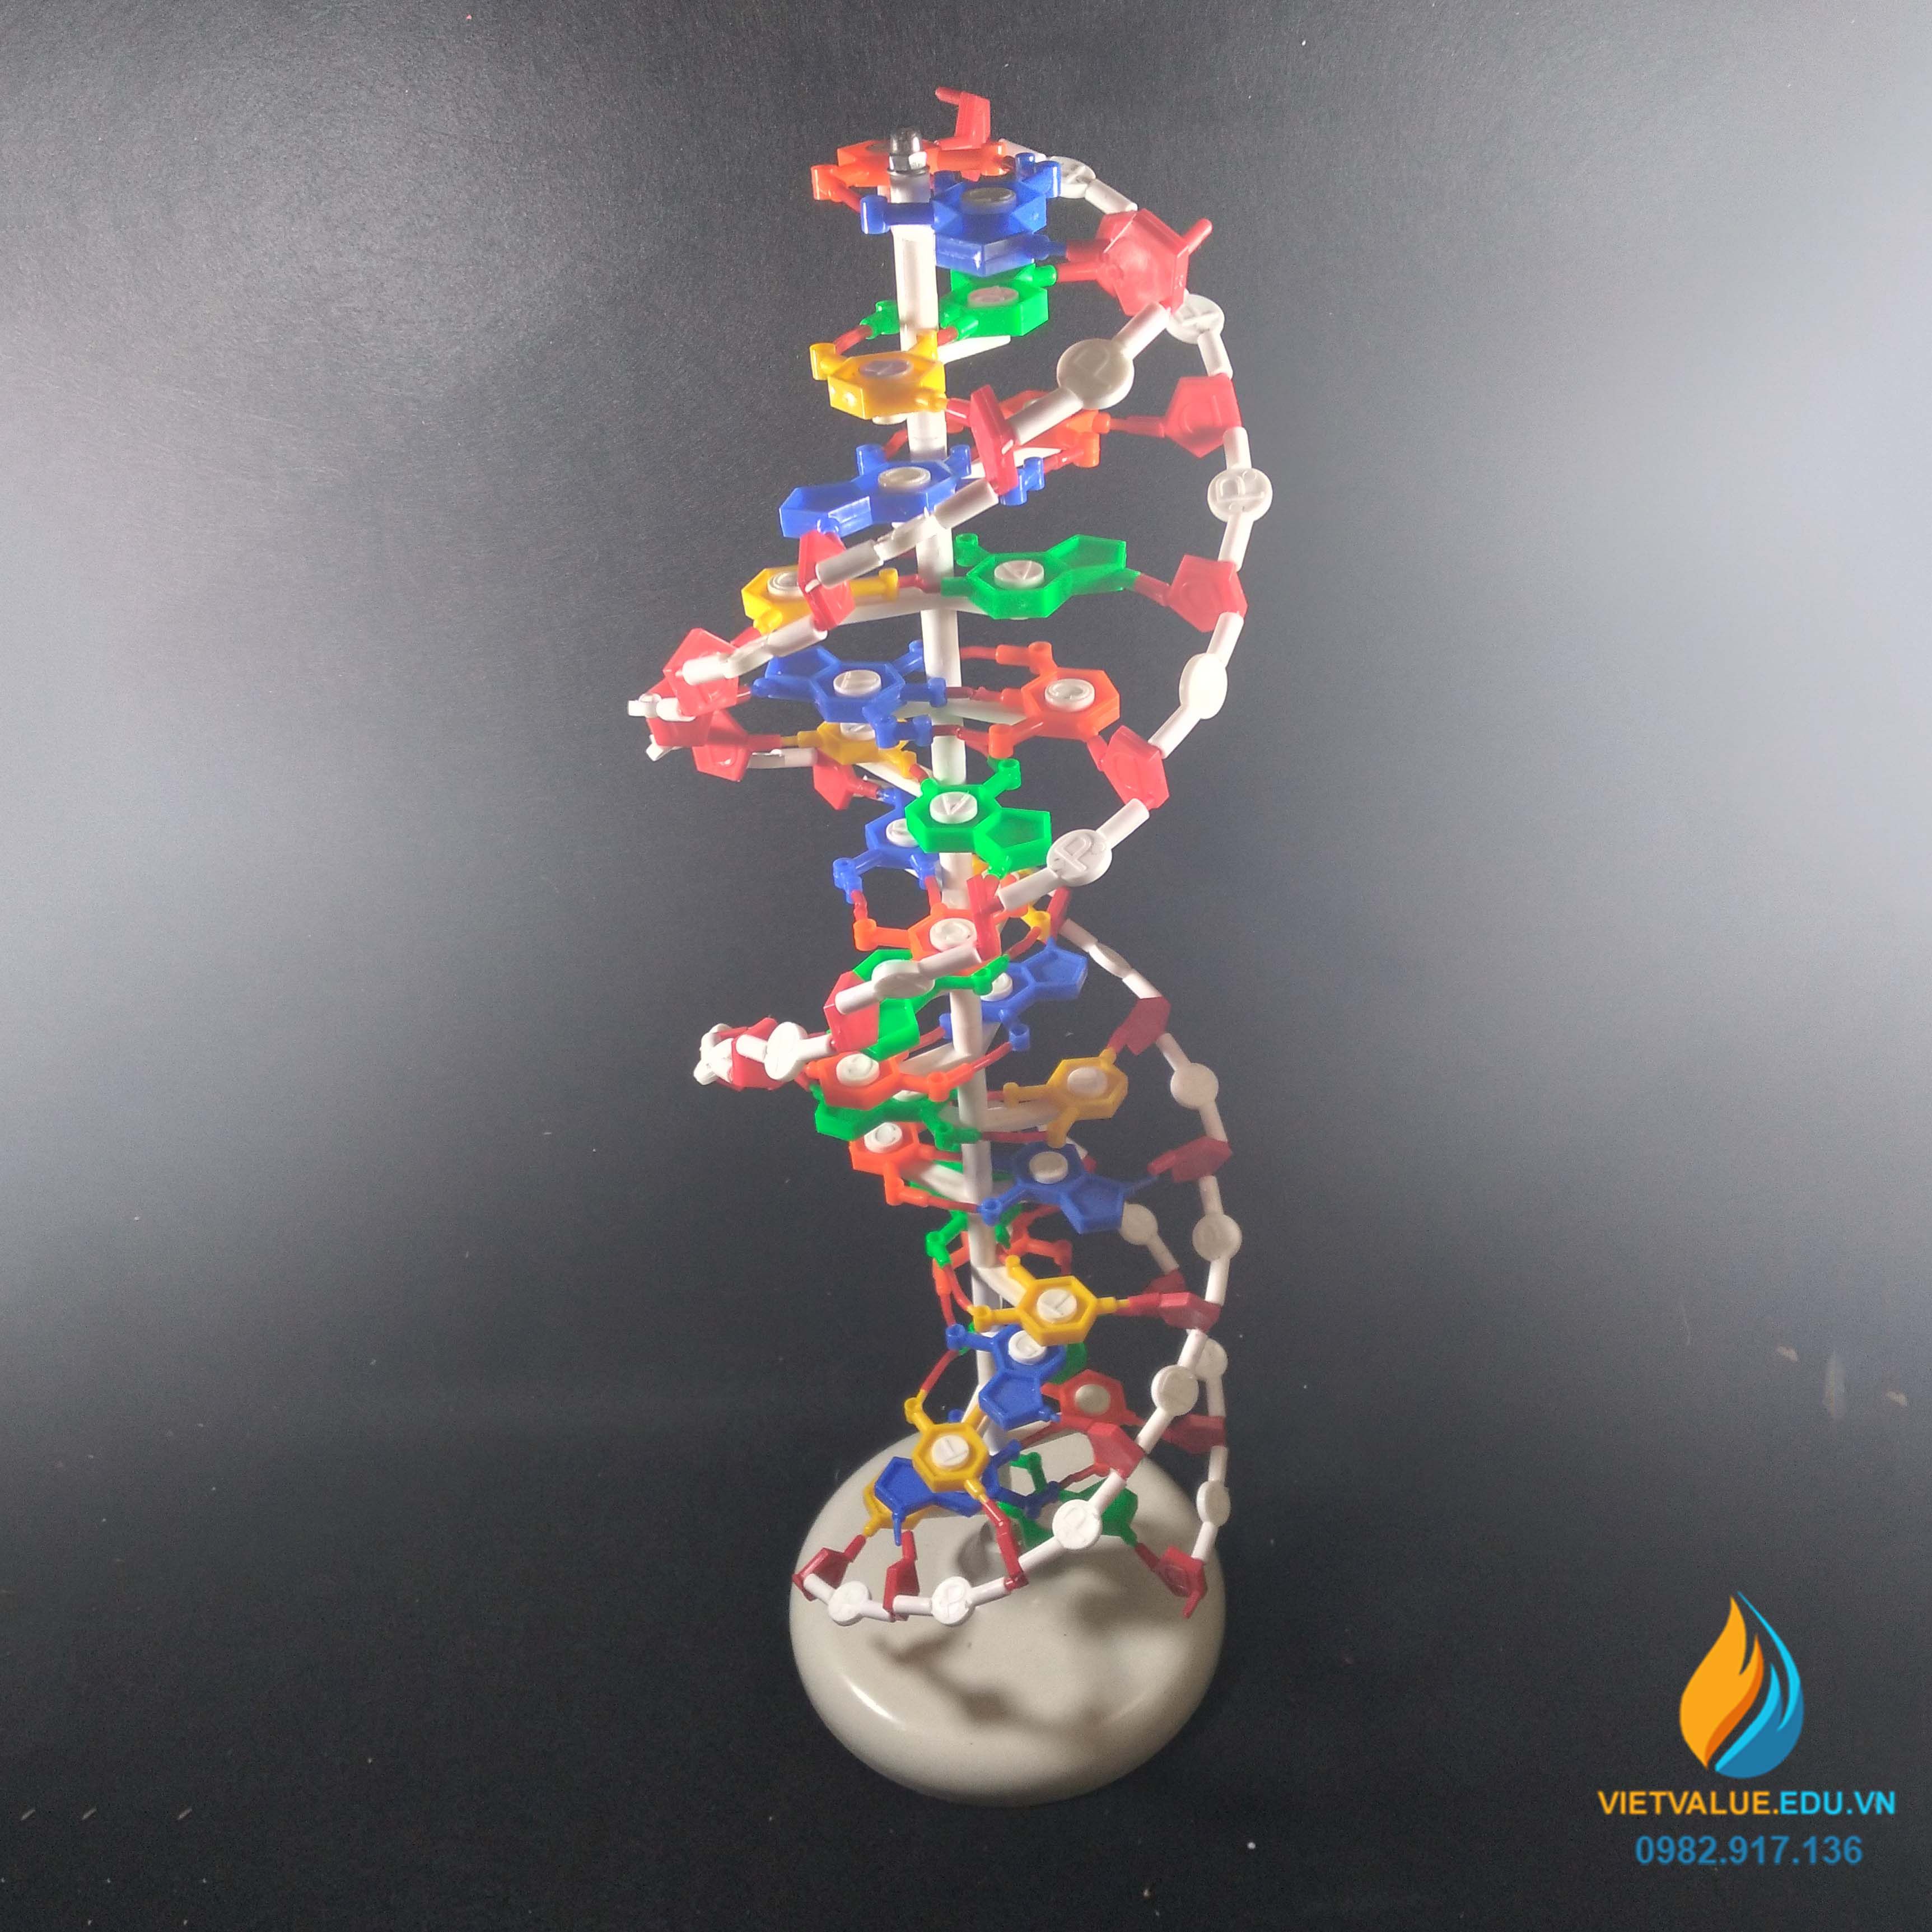 Mô hình cấu trúc không gian ADN  Công ty TNHH HiTec Huế  Linh Kiện Máy  Tính  Thiết Bị Trường Học  Sản Xuất Đồ Gỗ và Composite